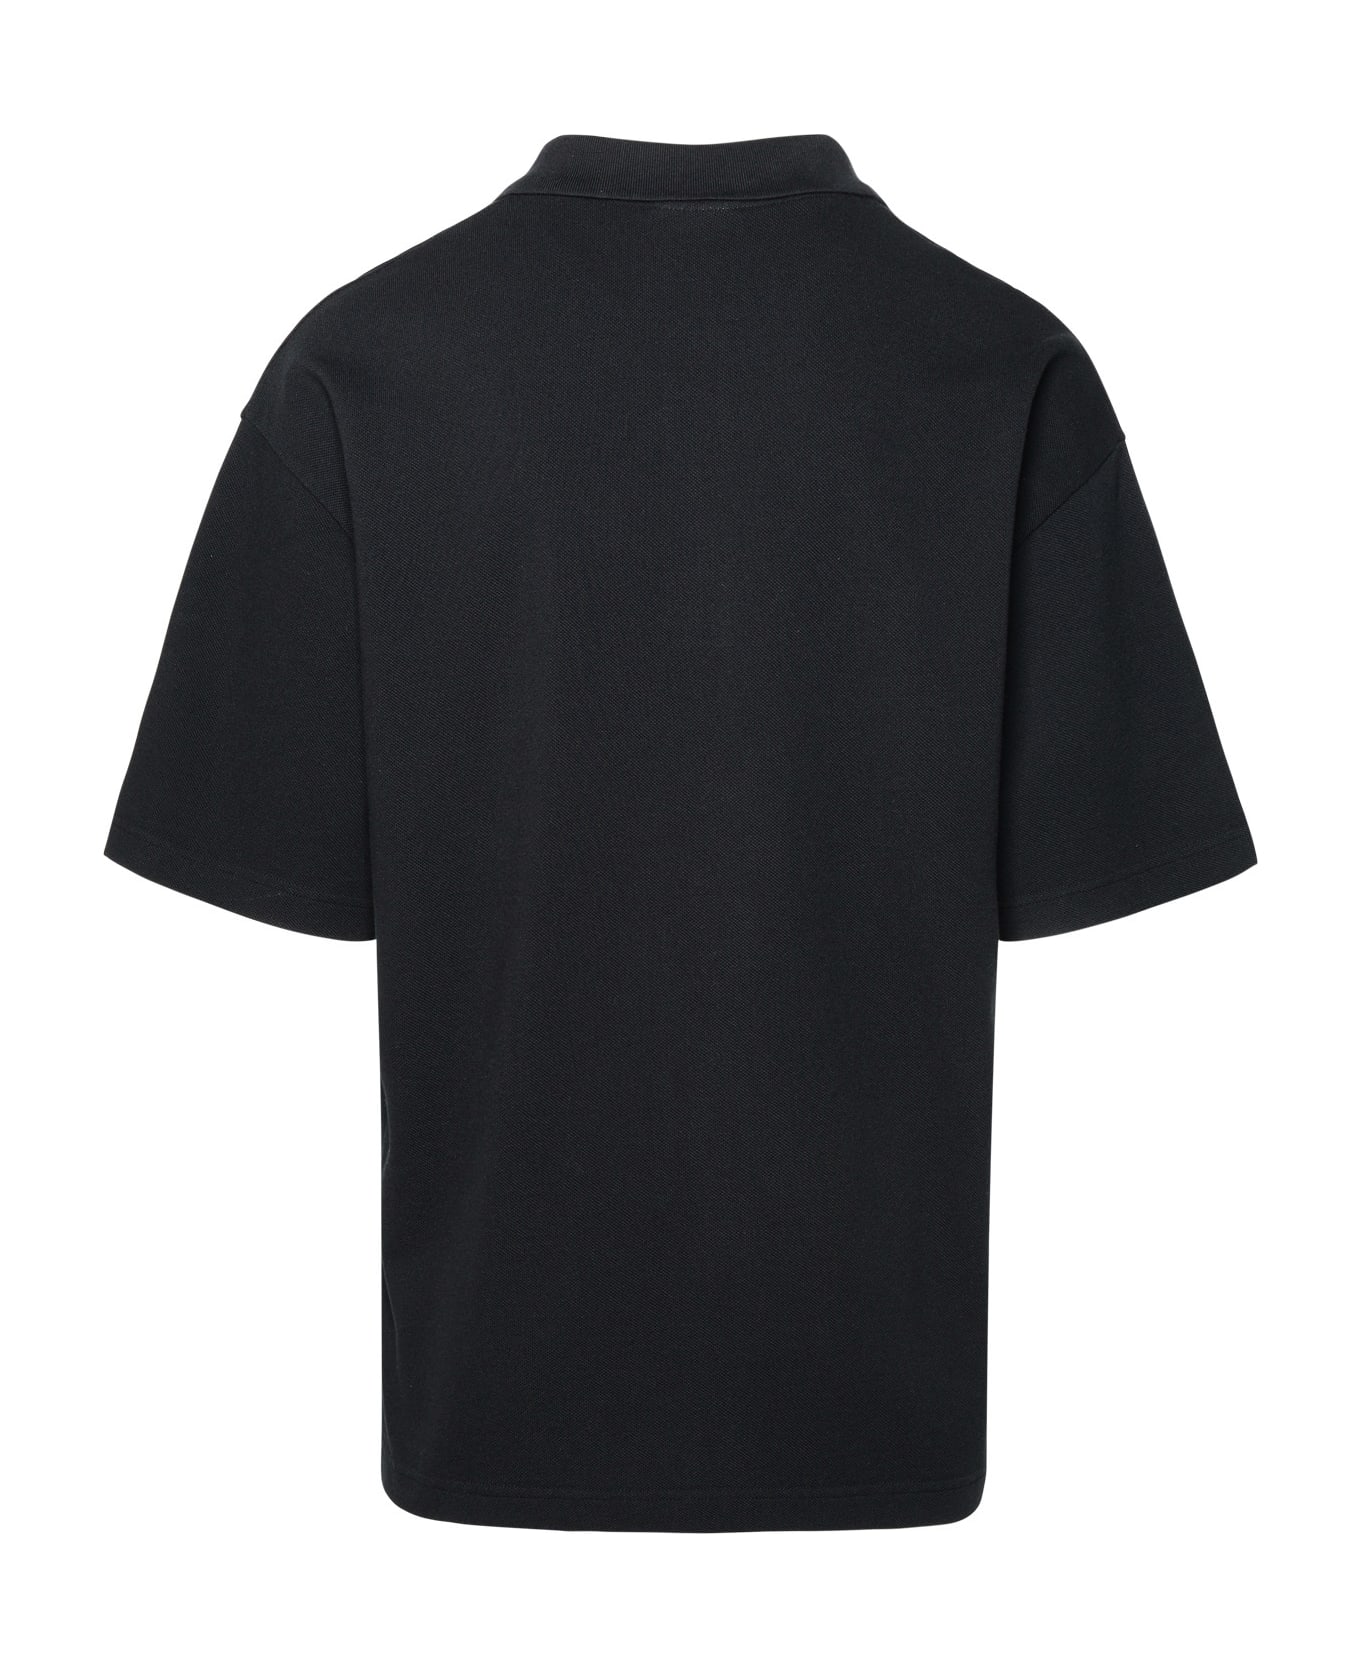 Maison Kitsuné Black Cotton Polo Shirt - Black